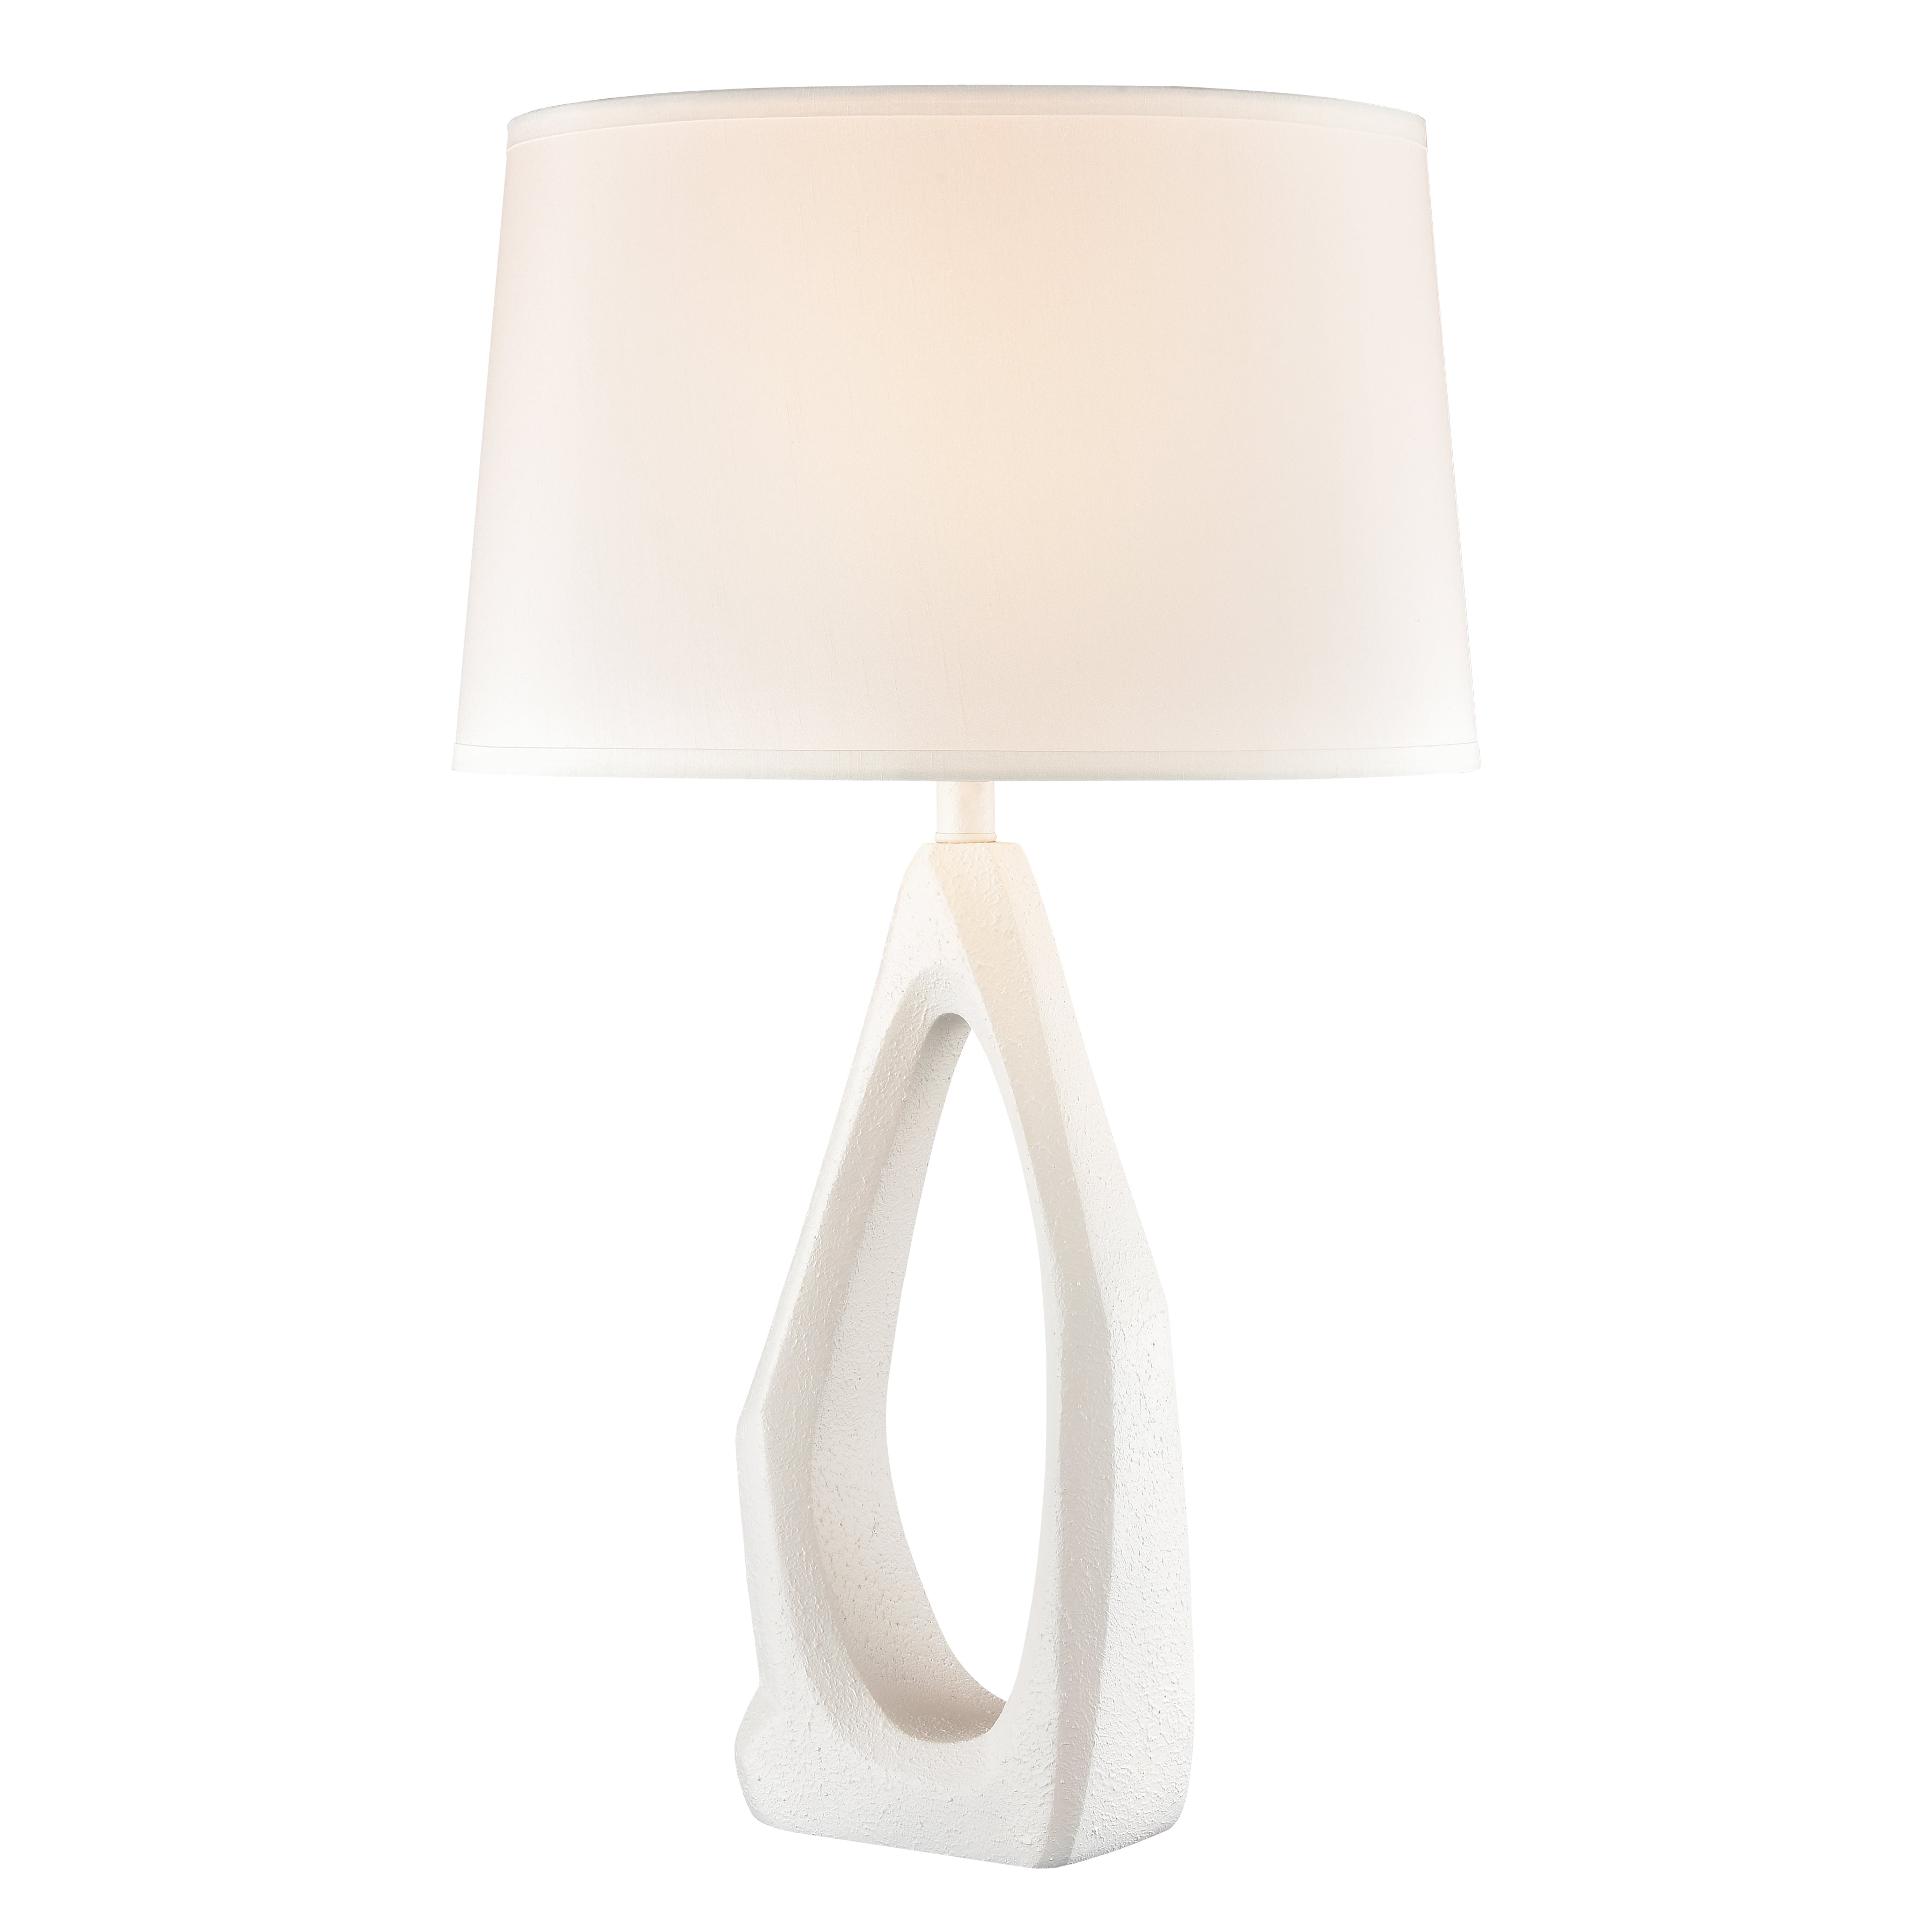 Galeria 31'' High 1-Light Table Lamp - Matte White